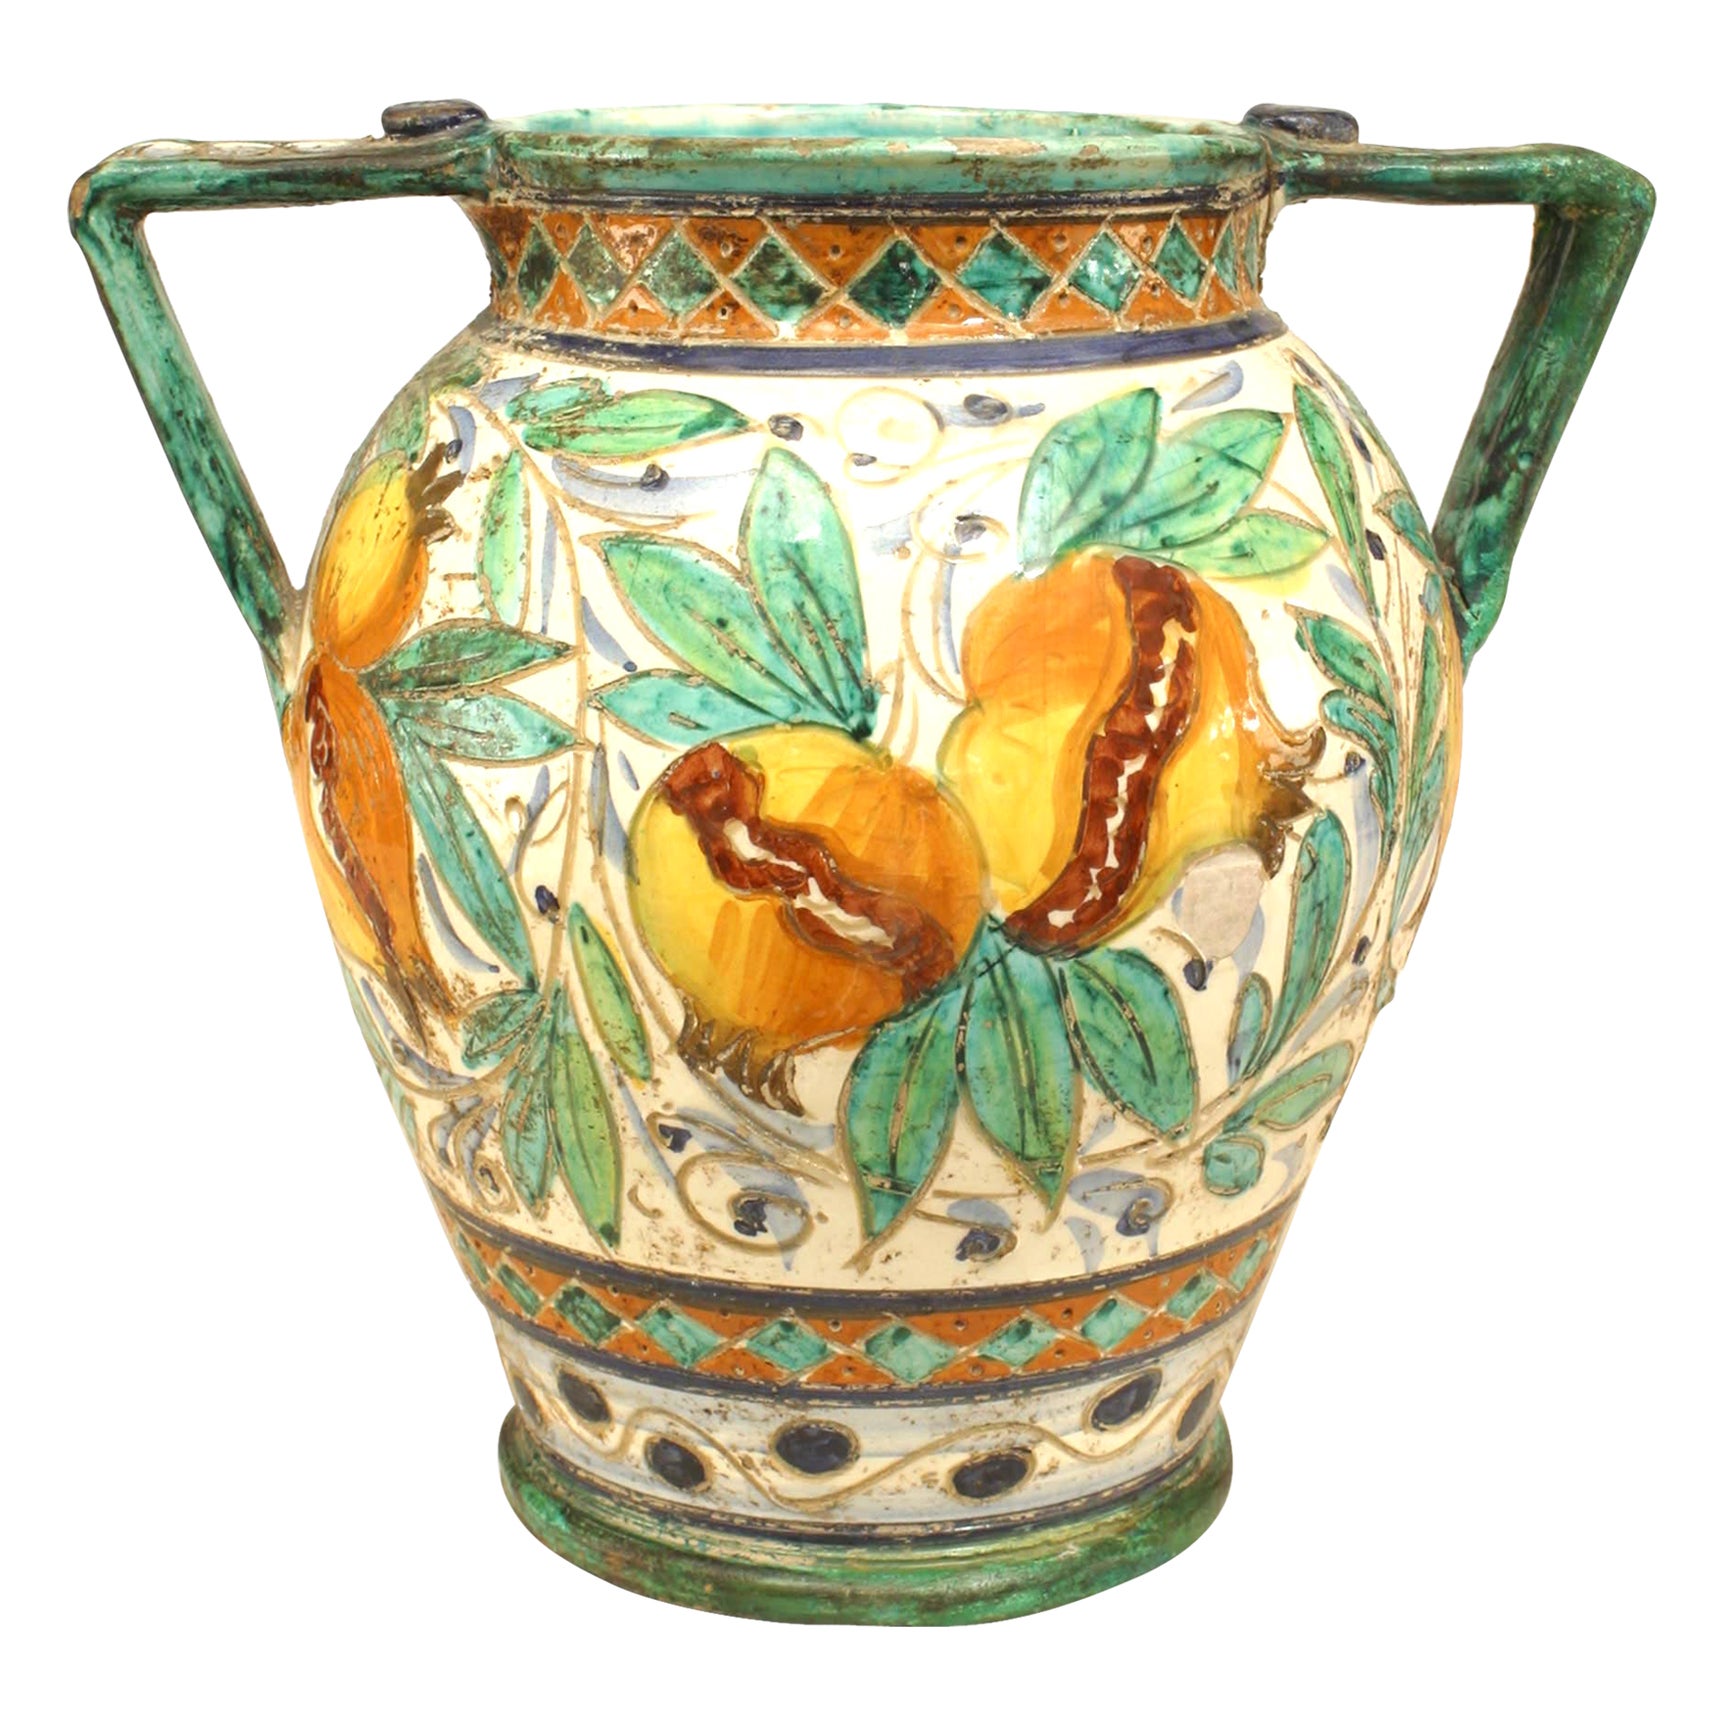 Italian Neoclassic Majolica Earthenware Vase with Bird